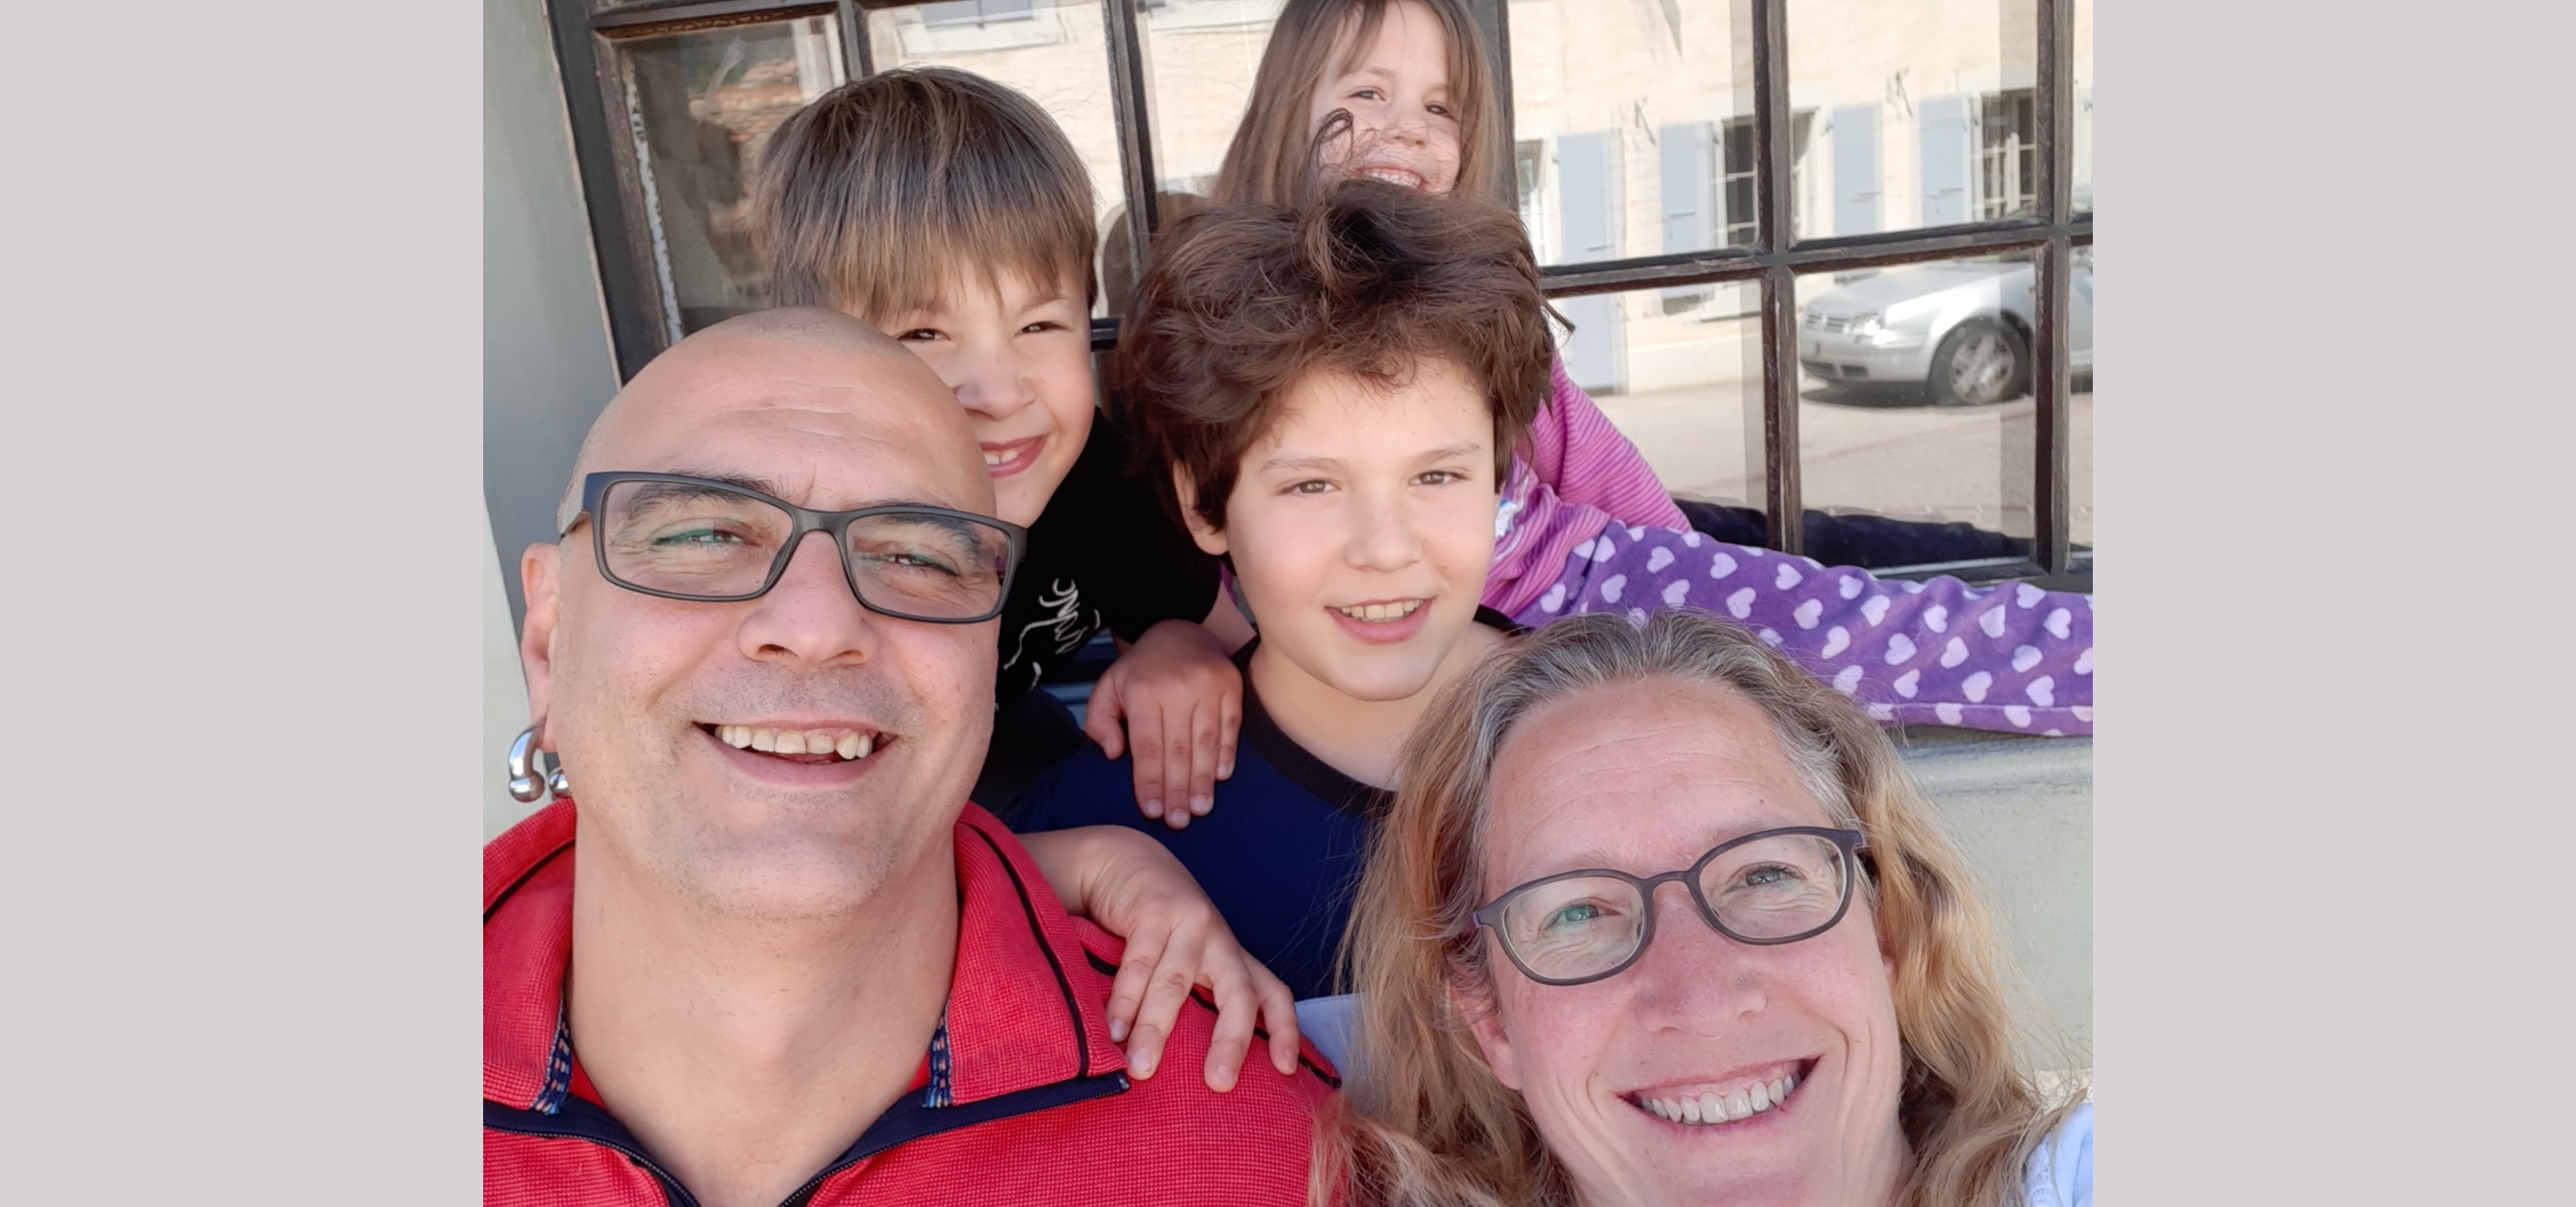 David et Stéphanie Olivo sont parents de trois enfants, Simon 11 ans, Guillen 8 ans et Julie 5 ans. Ils font la dure expérience de devoir concilier vie professionnelle à plein temps et école à la maison.